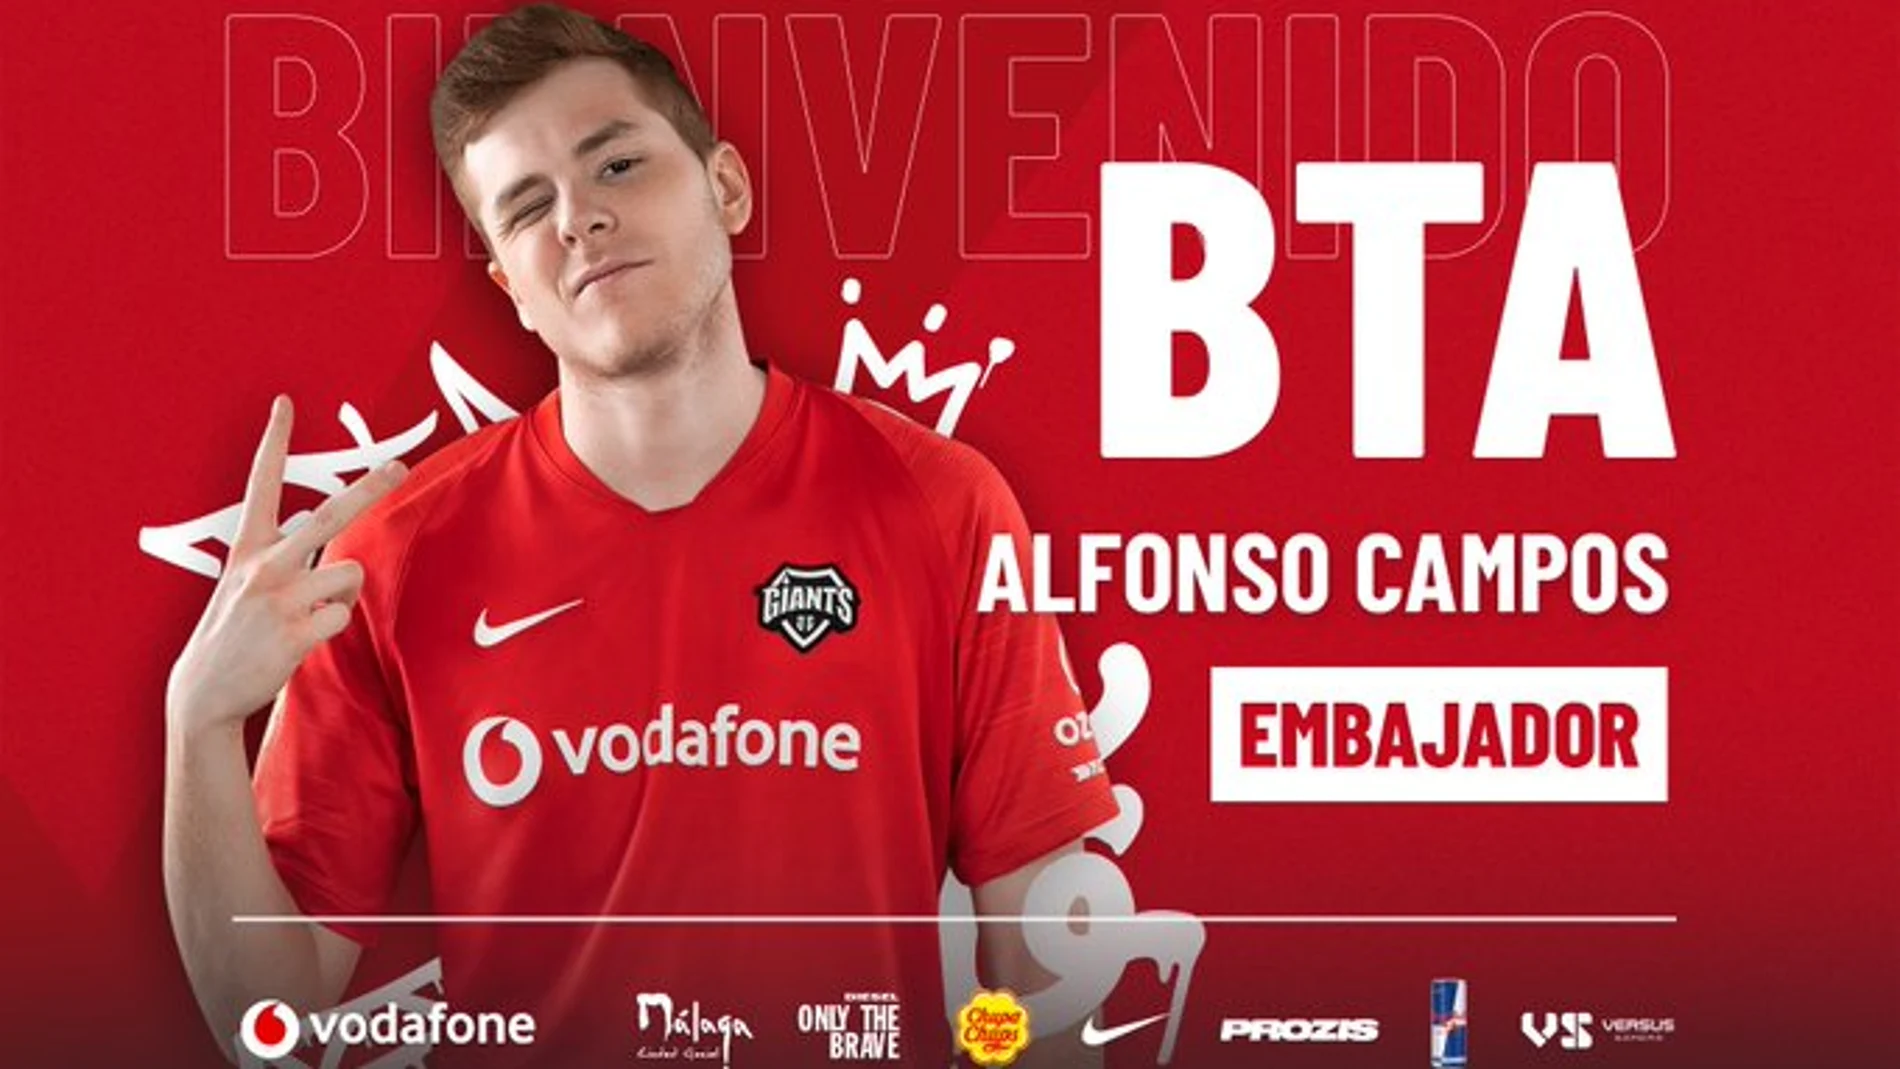 BTA embajador de Vodafone Giants